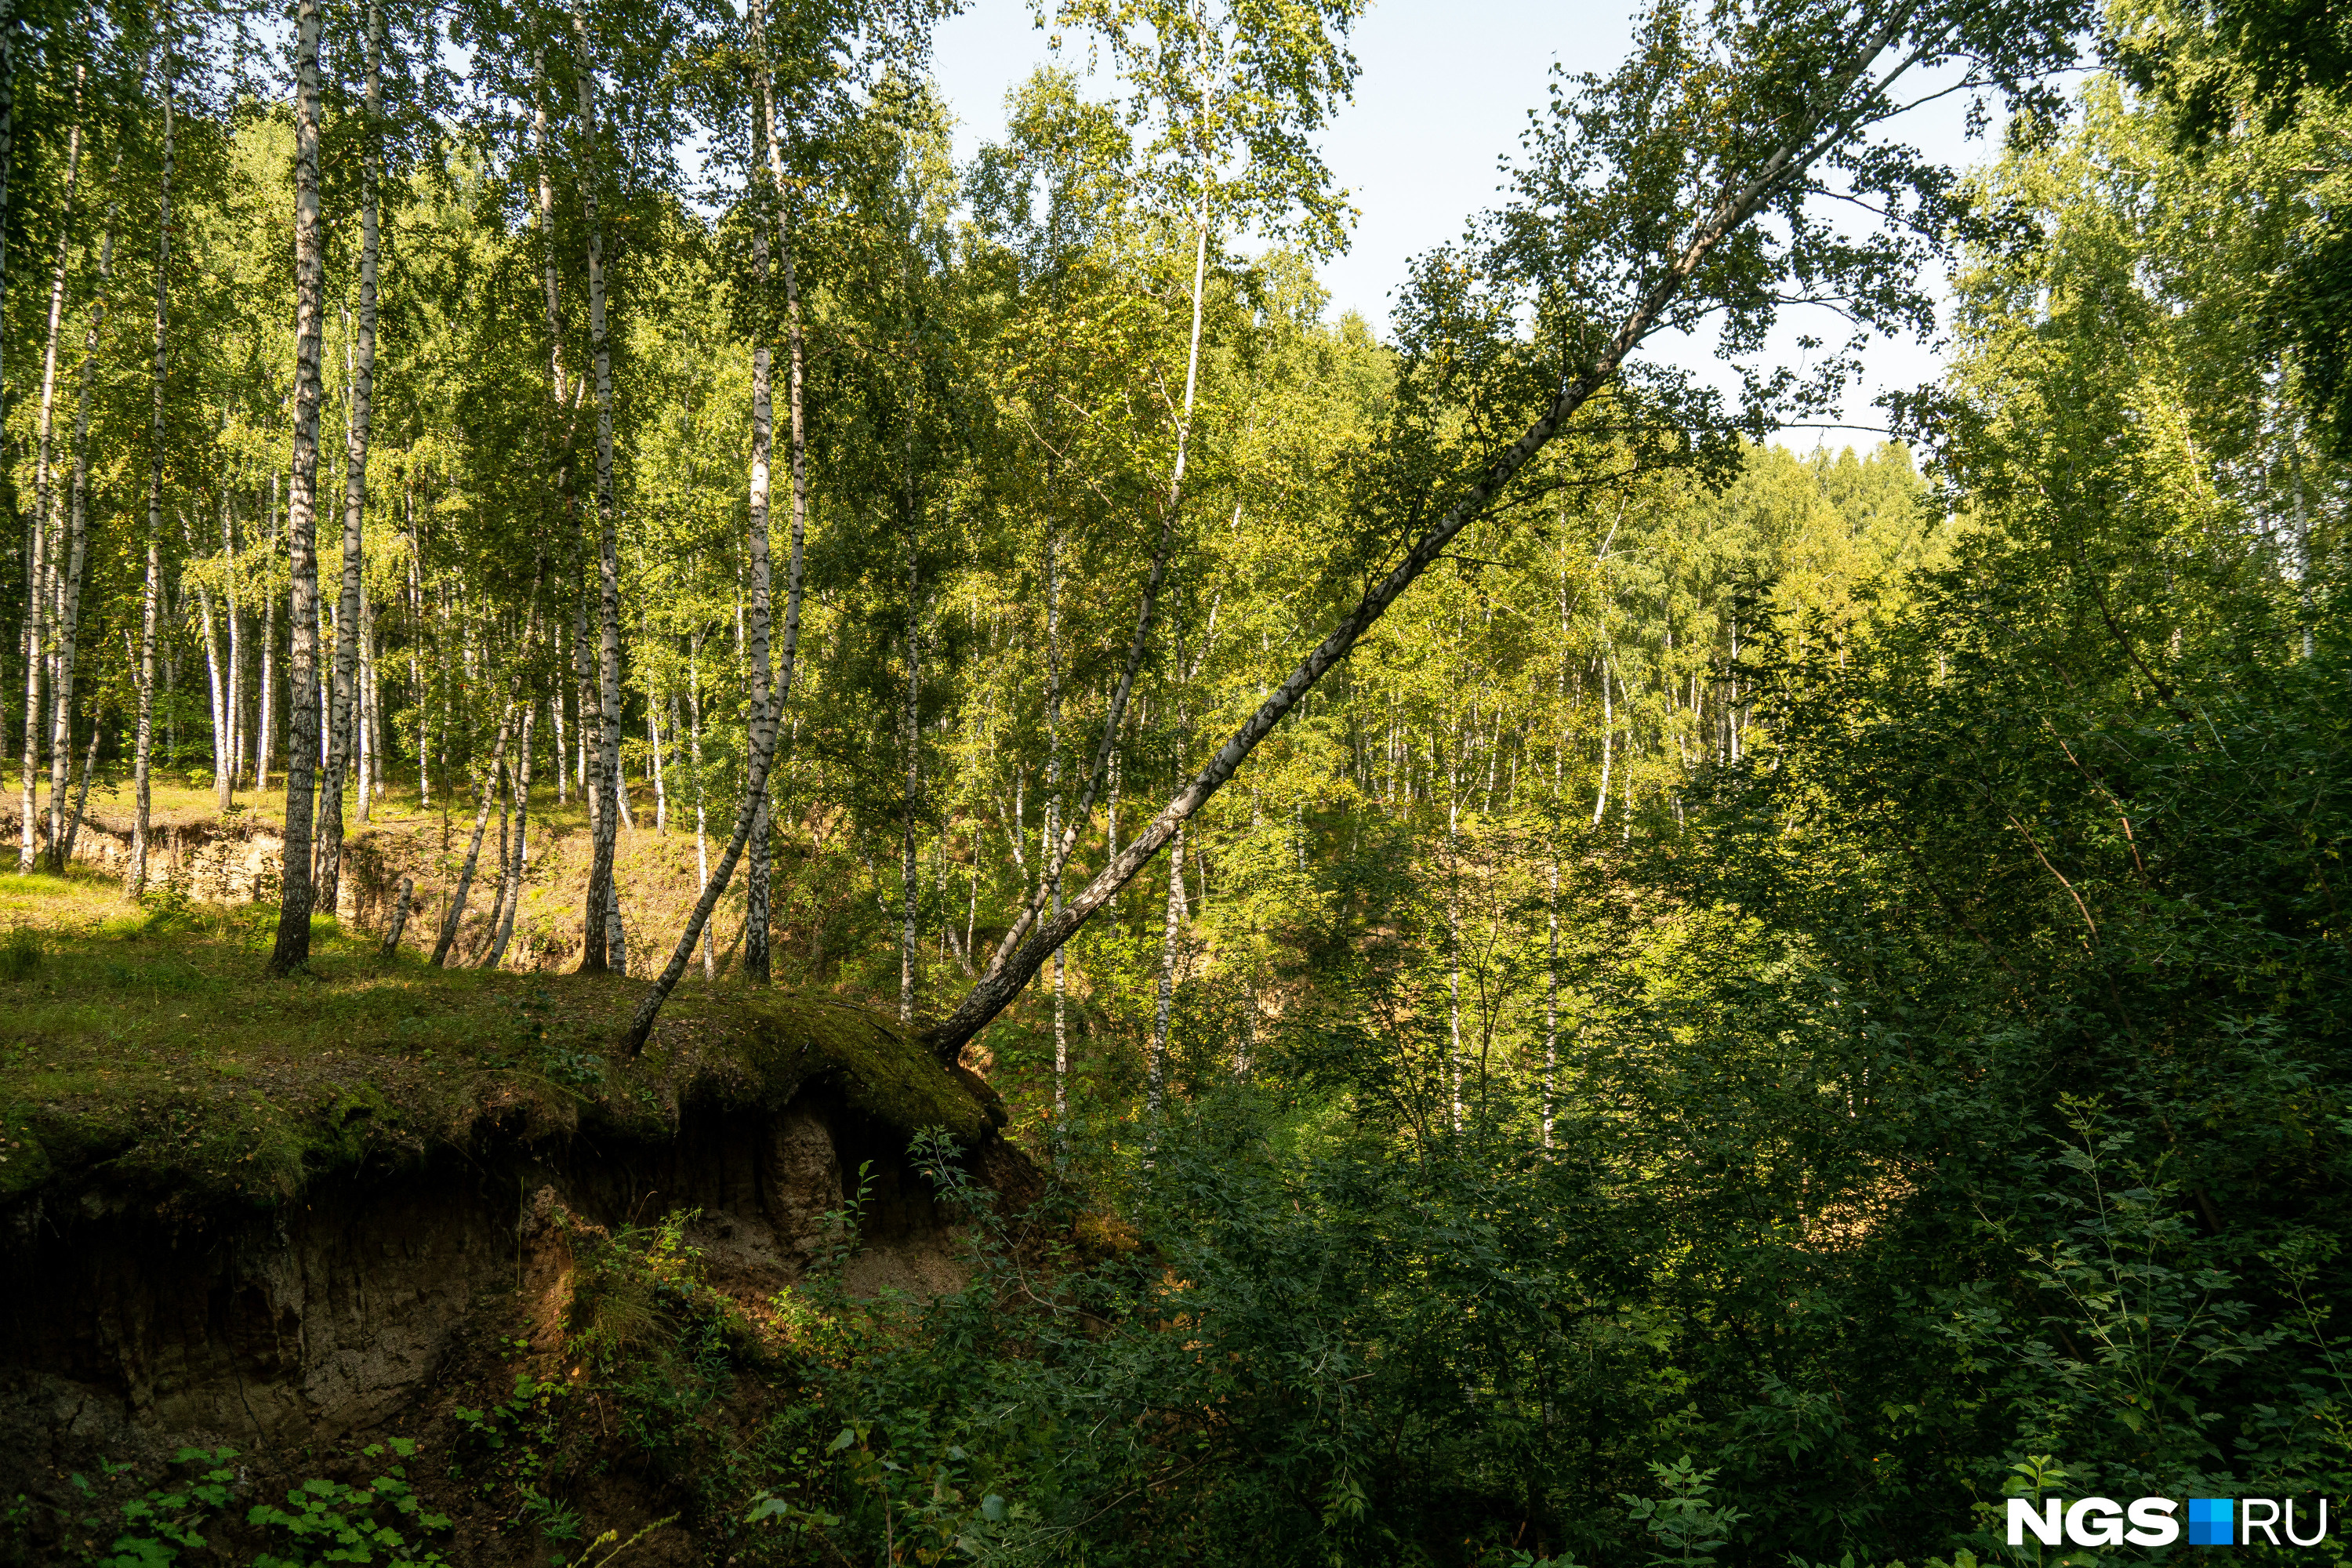 Лог, по которому бегут ручьи-притоки Камышенки, похож на тот, что в Дендропарке, только сосен здесь нет